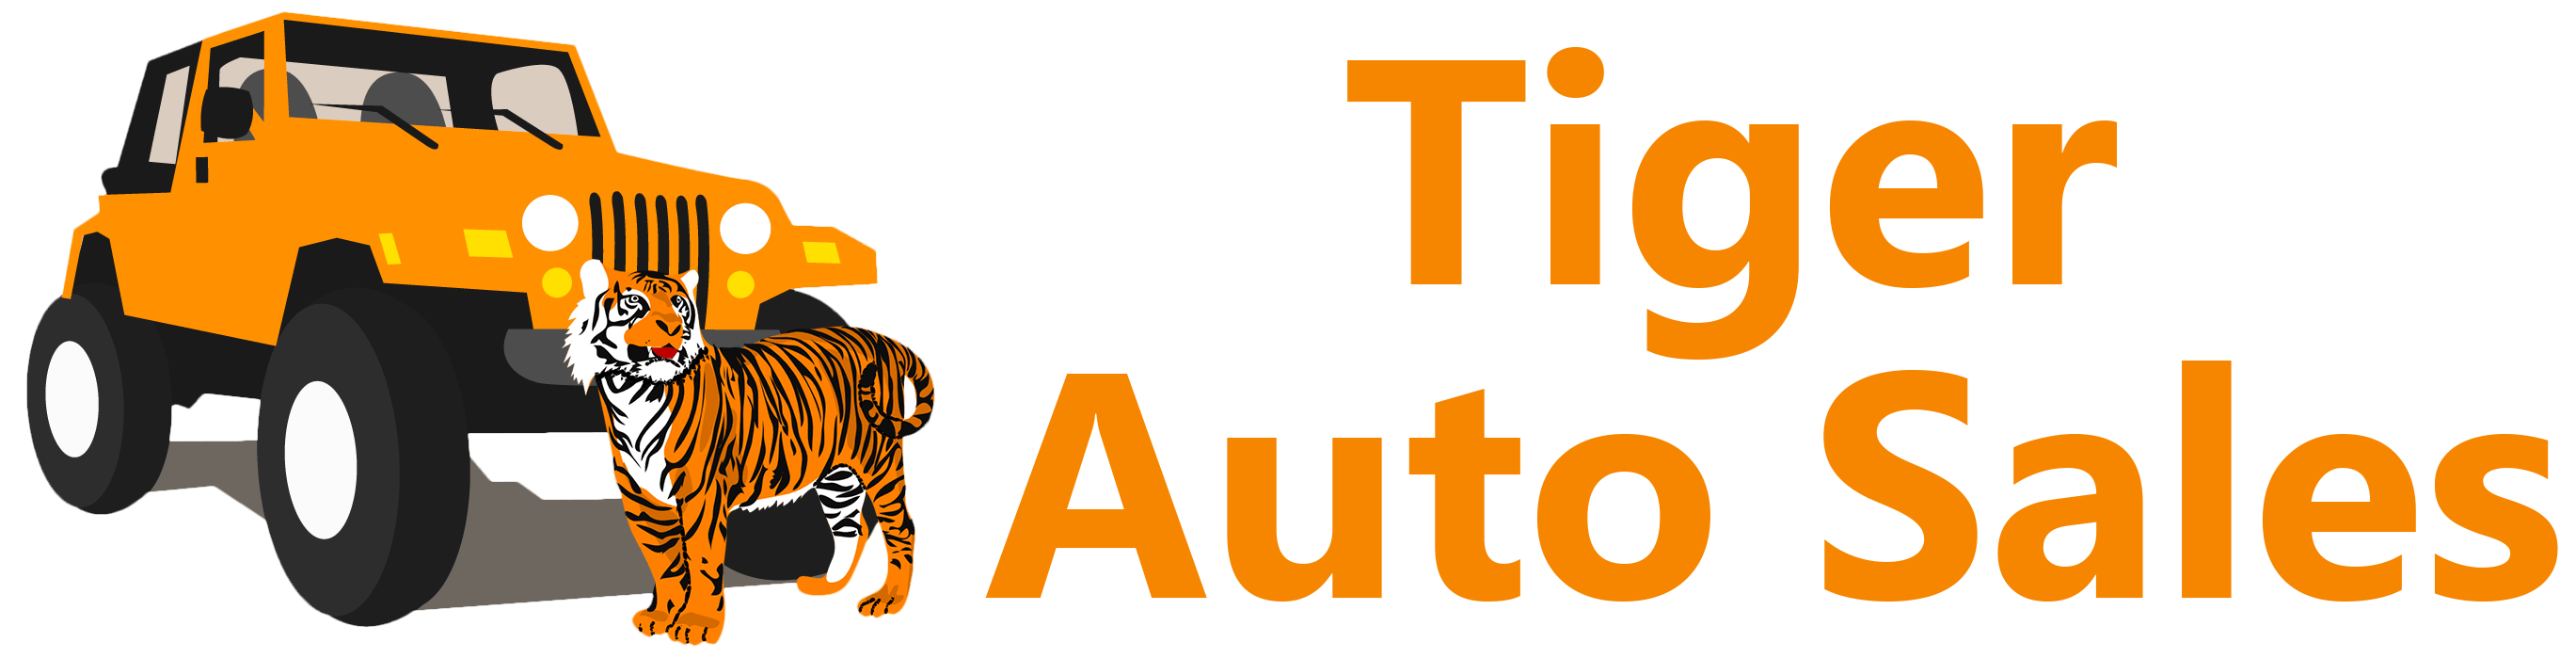 Tiger Auto Sales logo